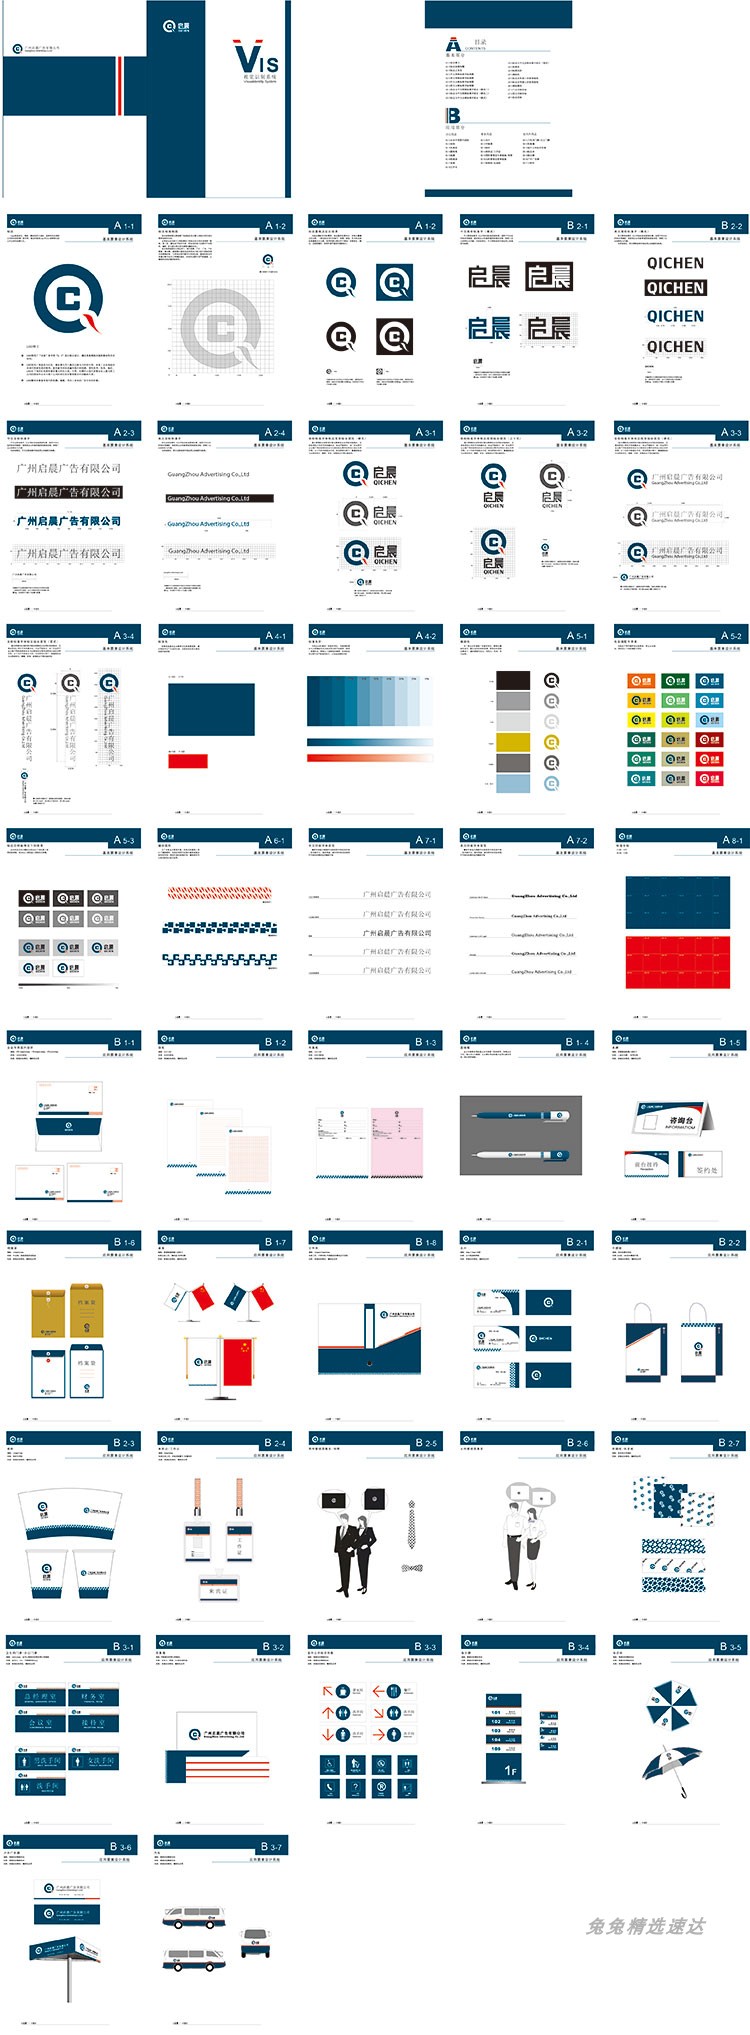 公司企业VI视觉应用设计全套手册模板品牌酒店AI格式导视素材 第47张